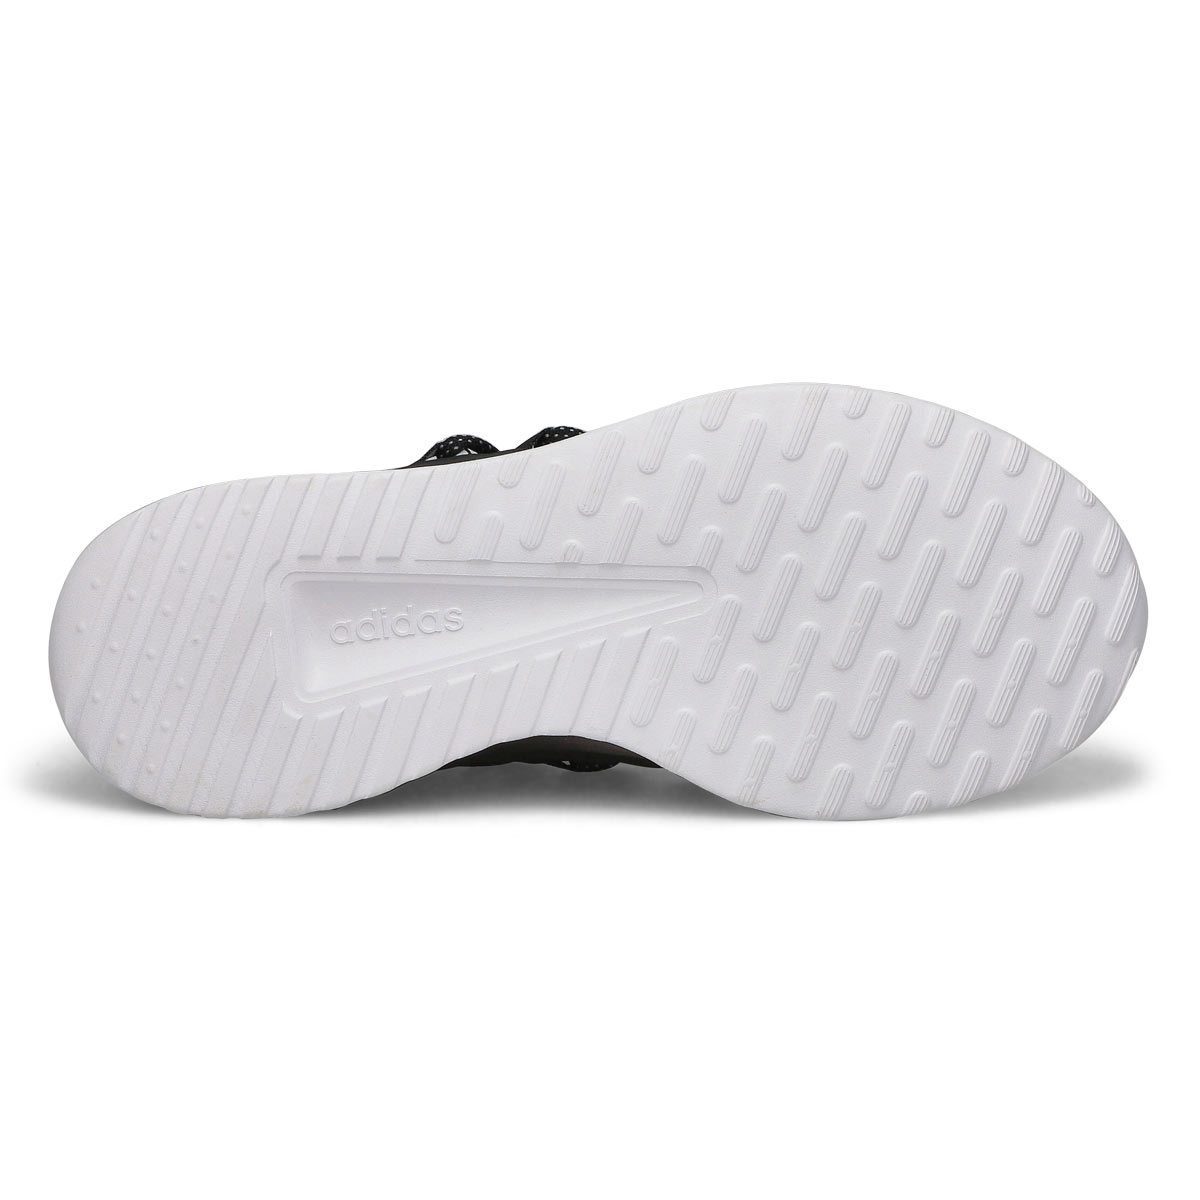 Men's Lite Racer Adapt 5.0 Wide Sneaker - White/Black